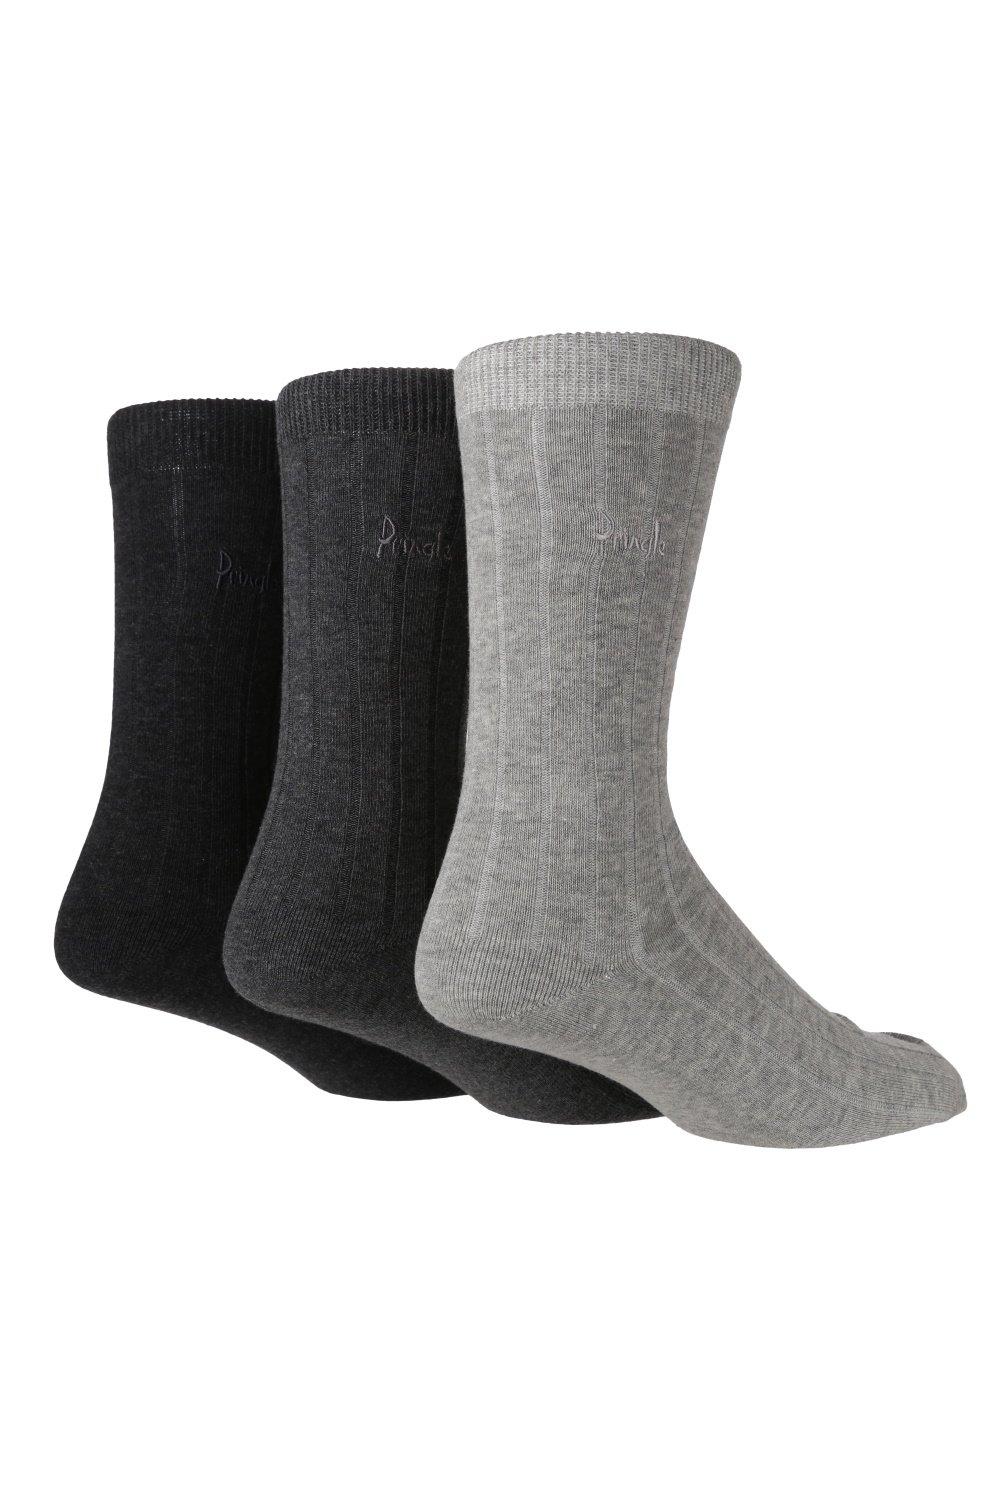 3 Pair Pack Laird Socks